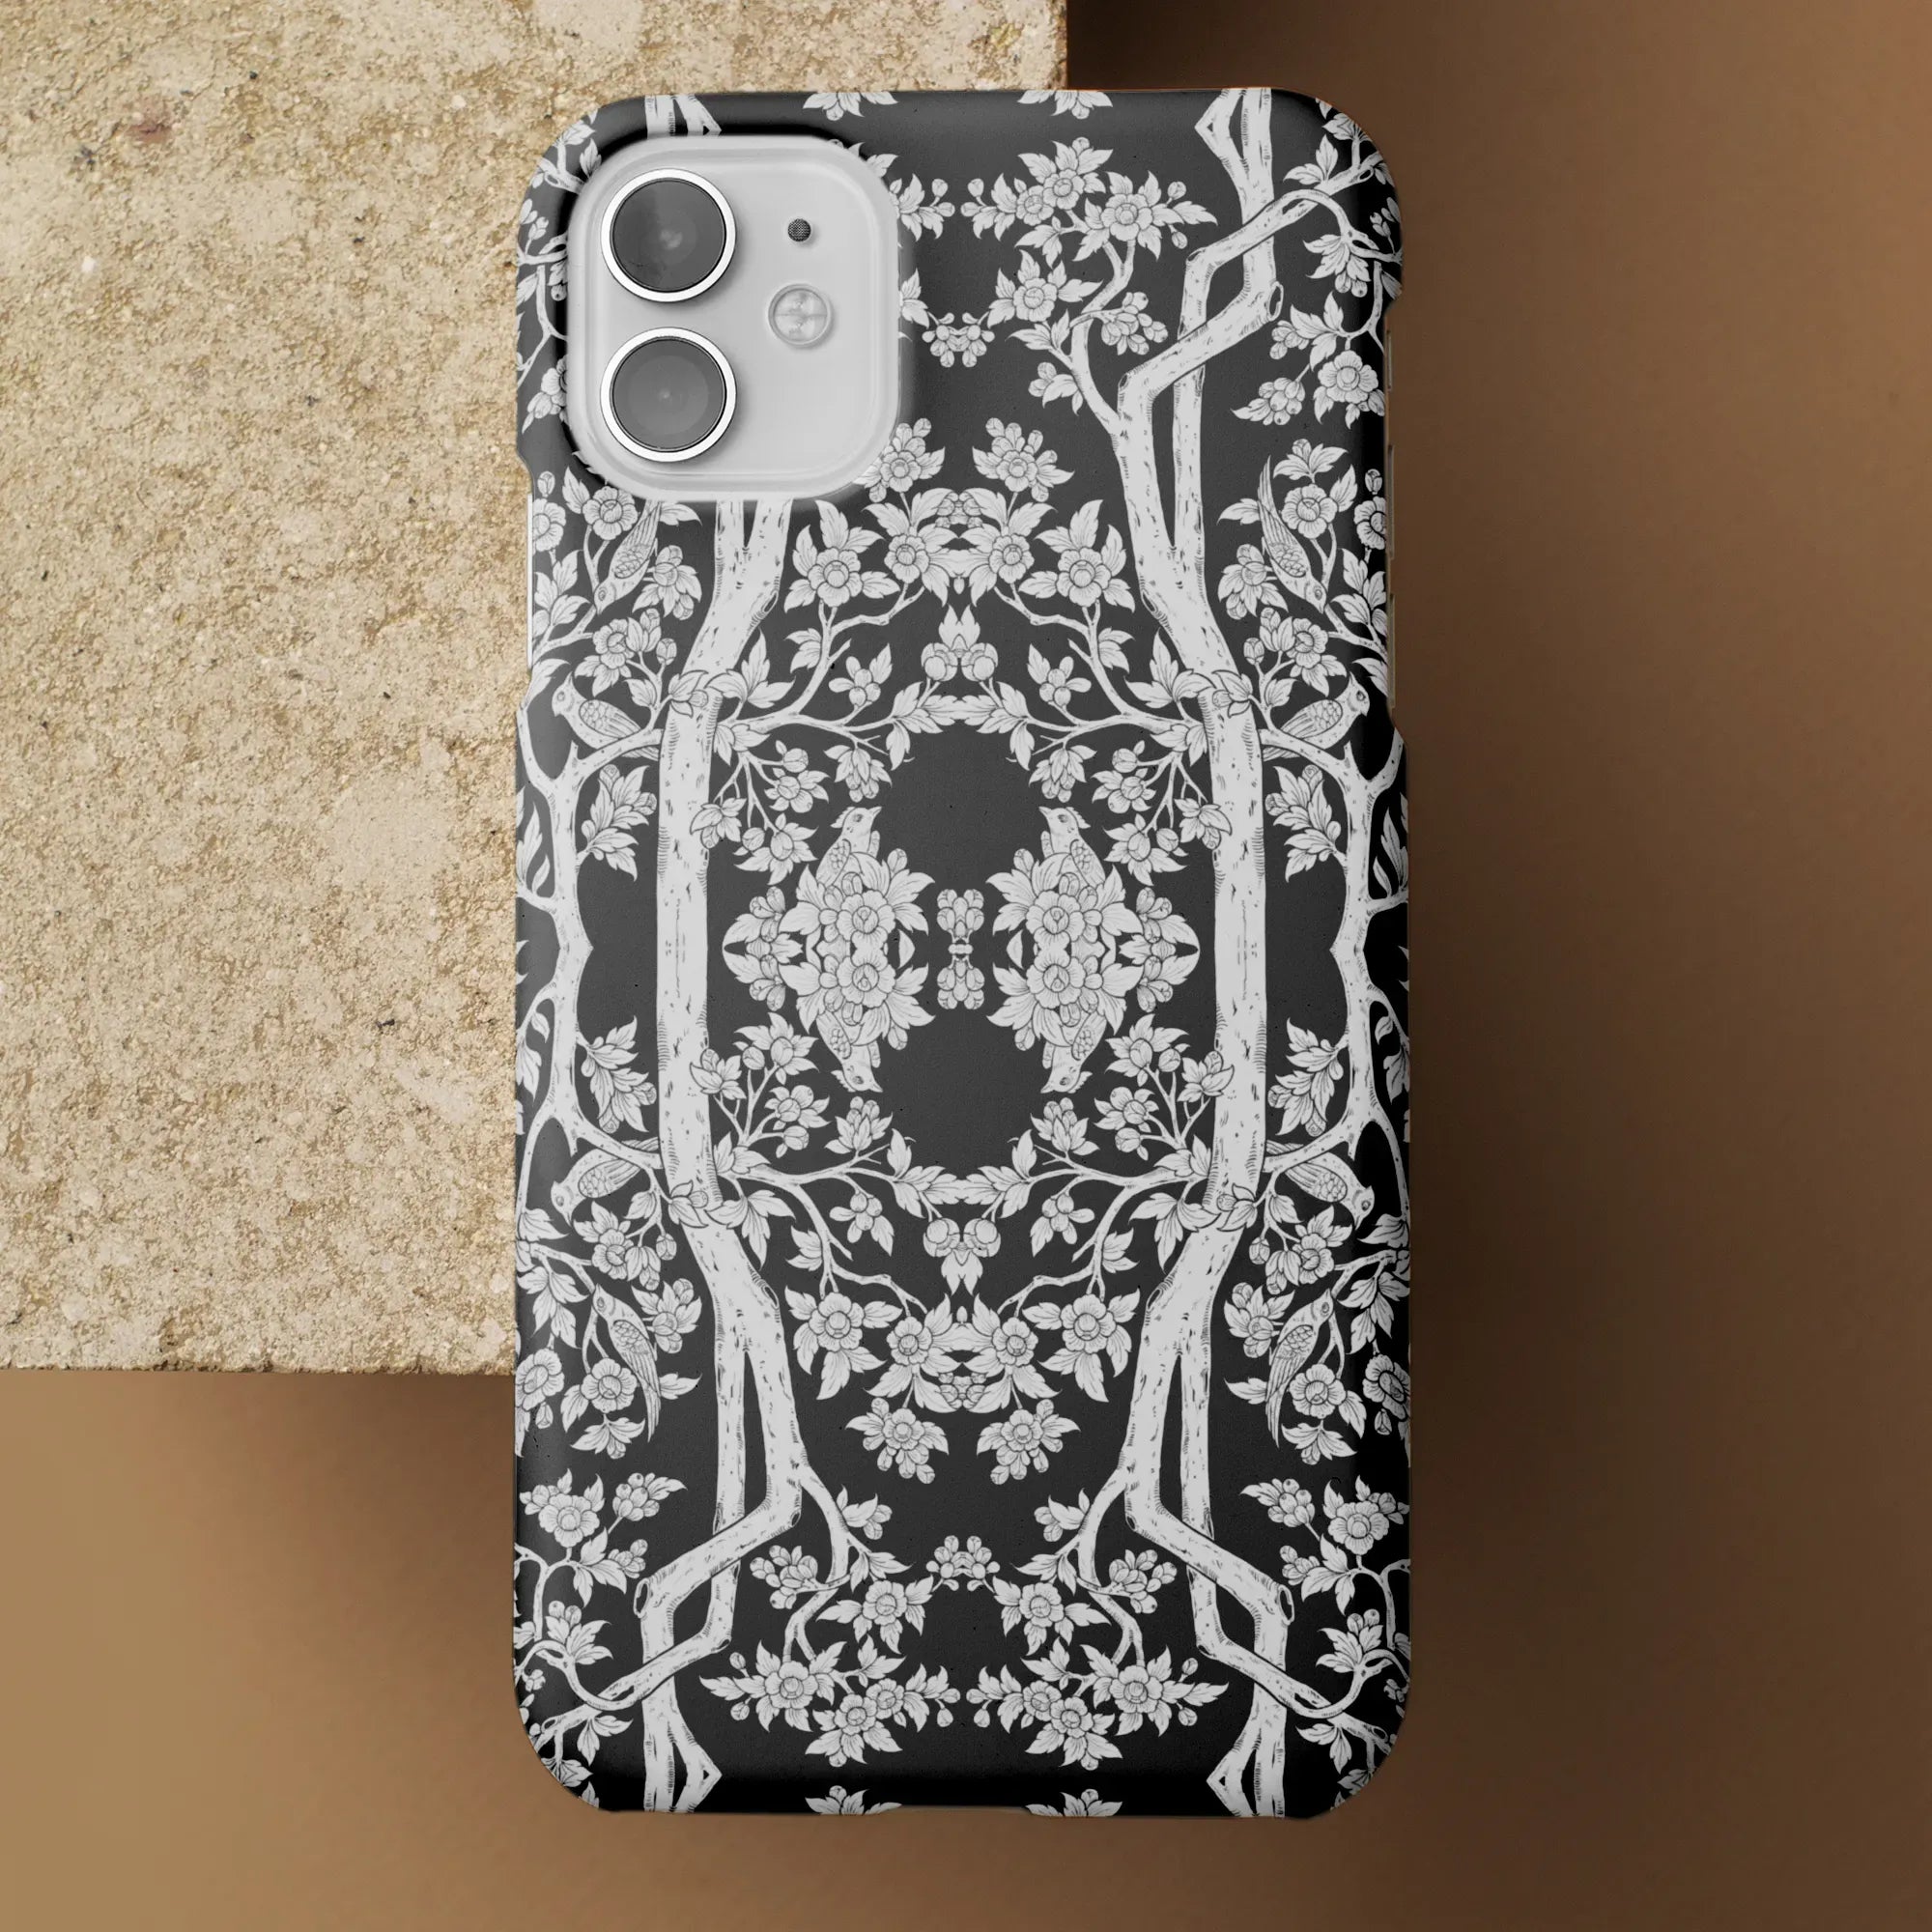 Aviary Black Aesthetic Pattern Art Phone Case - Mobile Phone Cases - Aesthetic Art